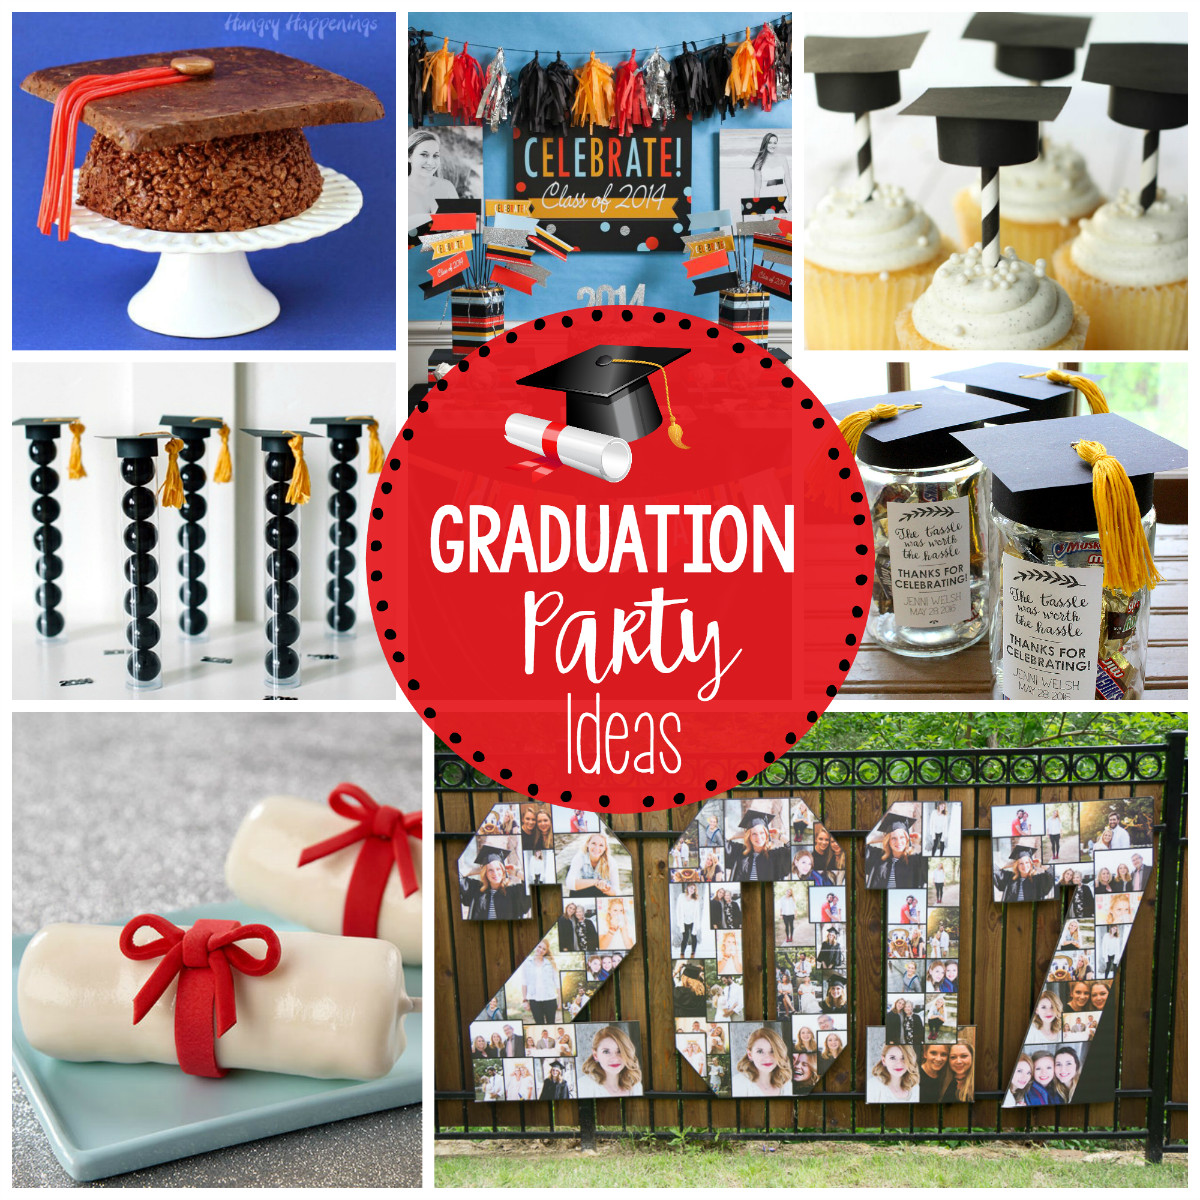 Graduation Party Ideas At A Beach'
 25 Fun Graduation Party Ideas – Fun Squared